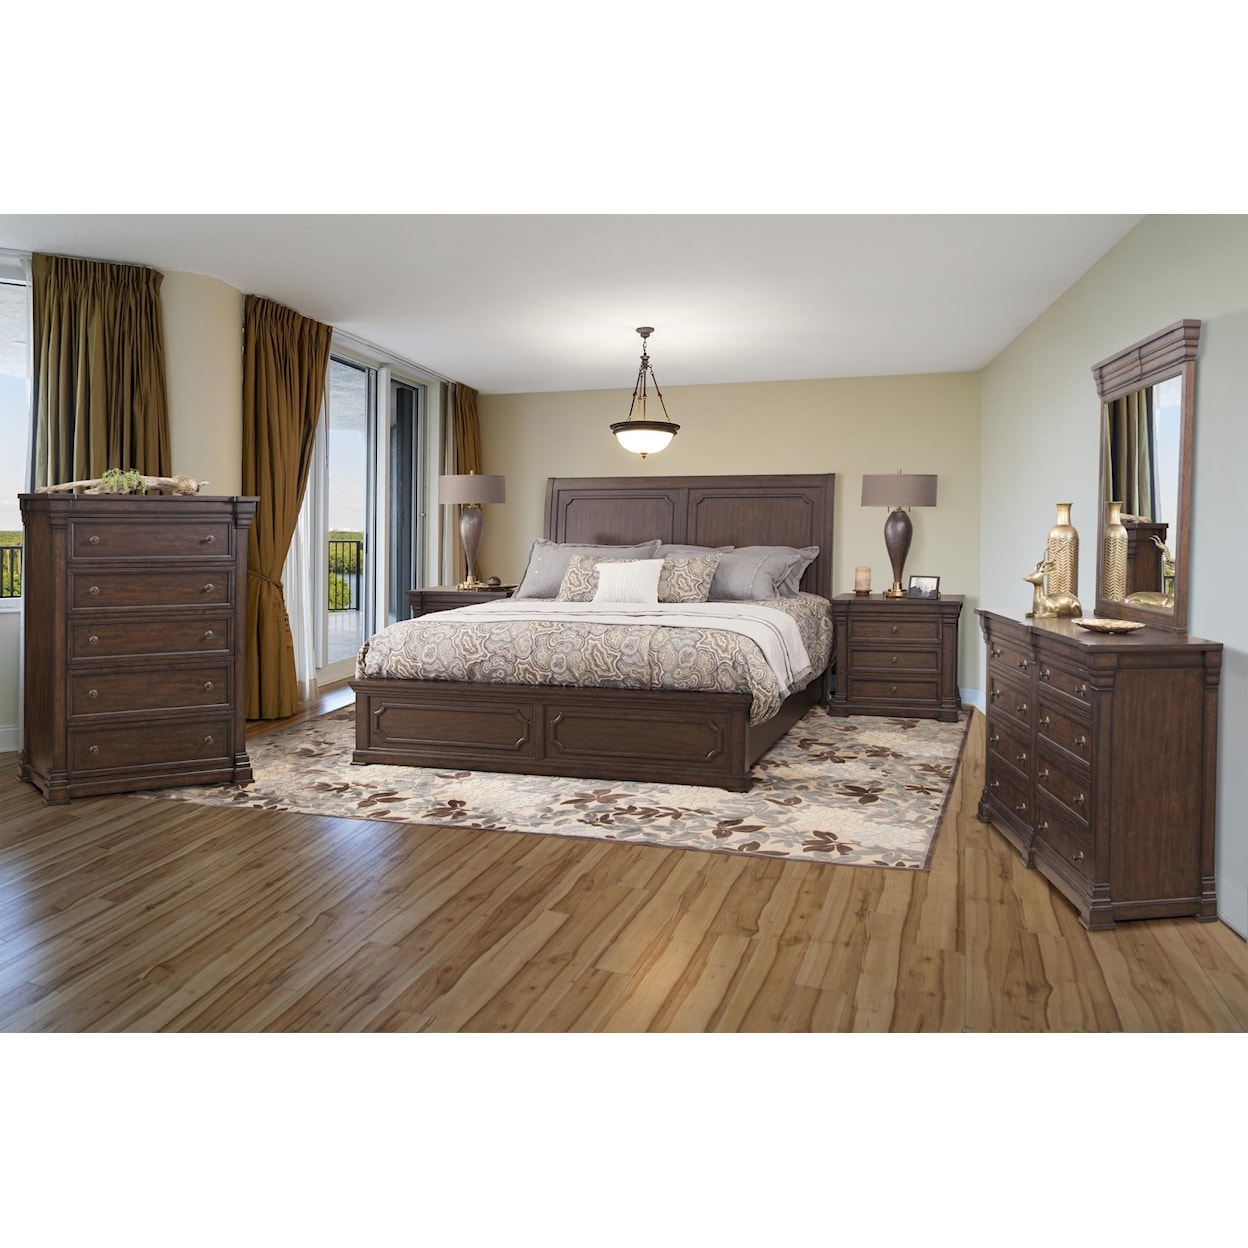 American Woodcrafters Kestrel Hills 7pc Queen Bedroom Group